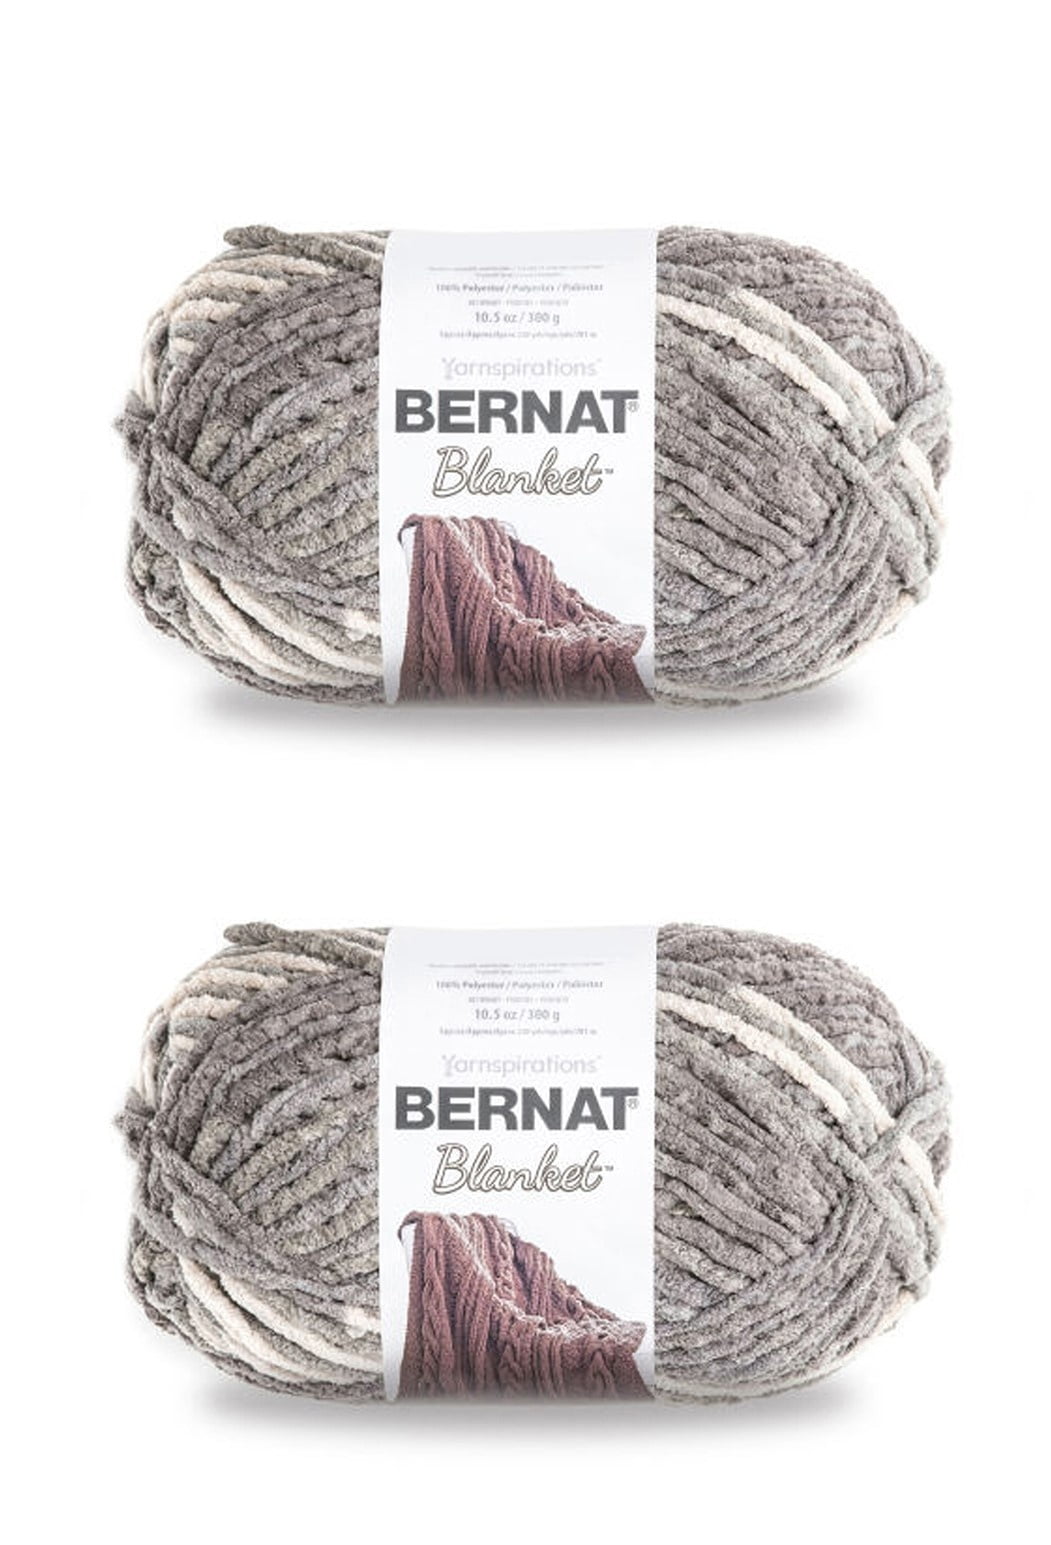 Bernat Blanket Vintage White Yarn - 2 Pack of 300g/10.5oz - Polyester - 6  Super Bulky - 220 Yards - Knitting/Crochet